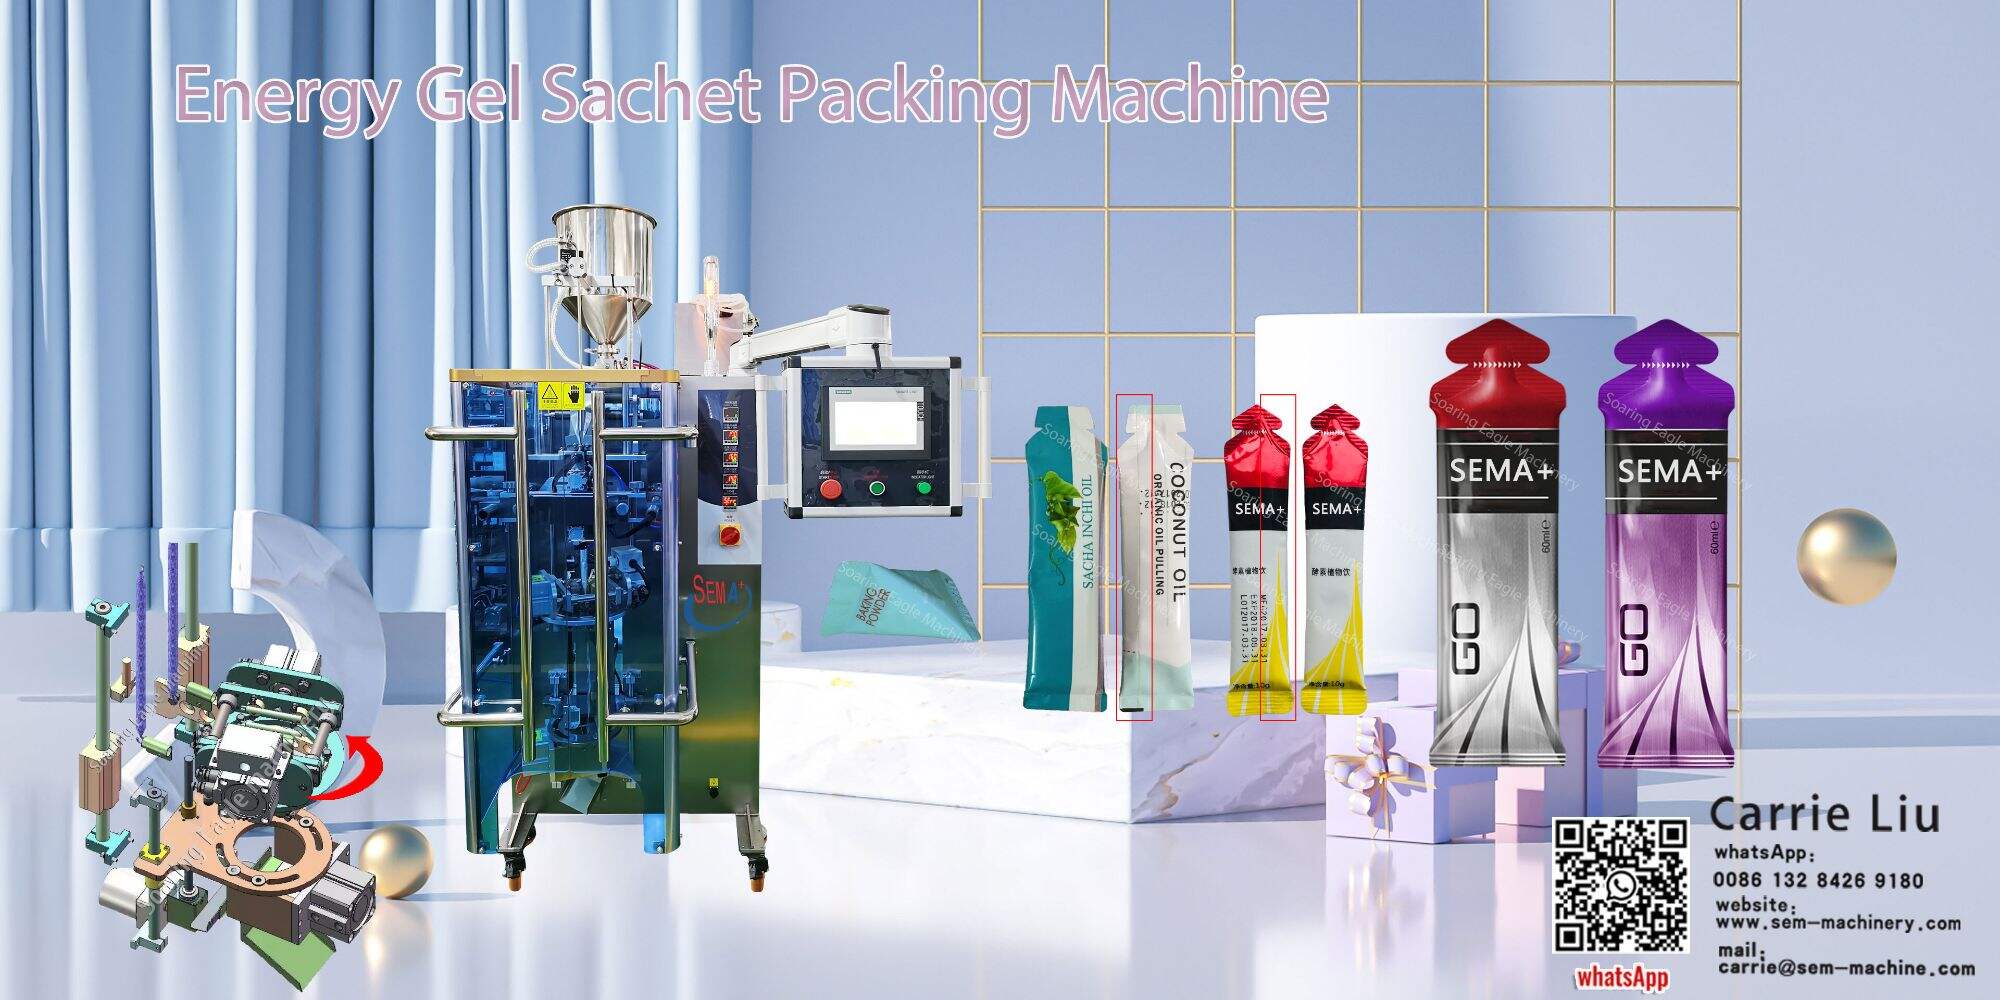 Visokokvalitetna mašina za pakovanje energetskih gel vrećica